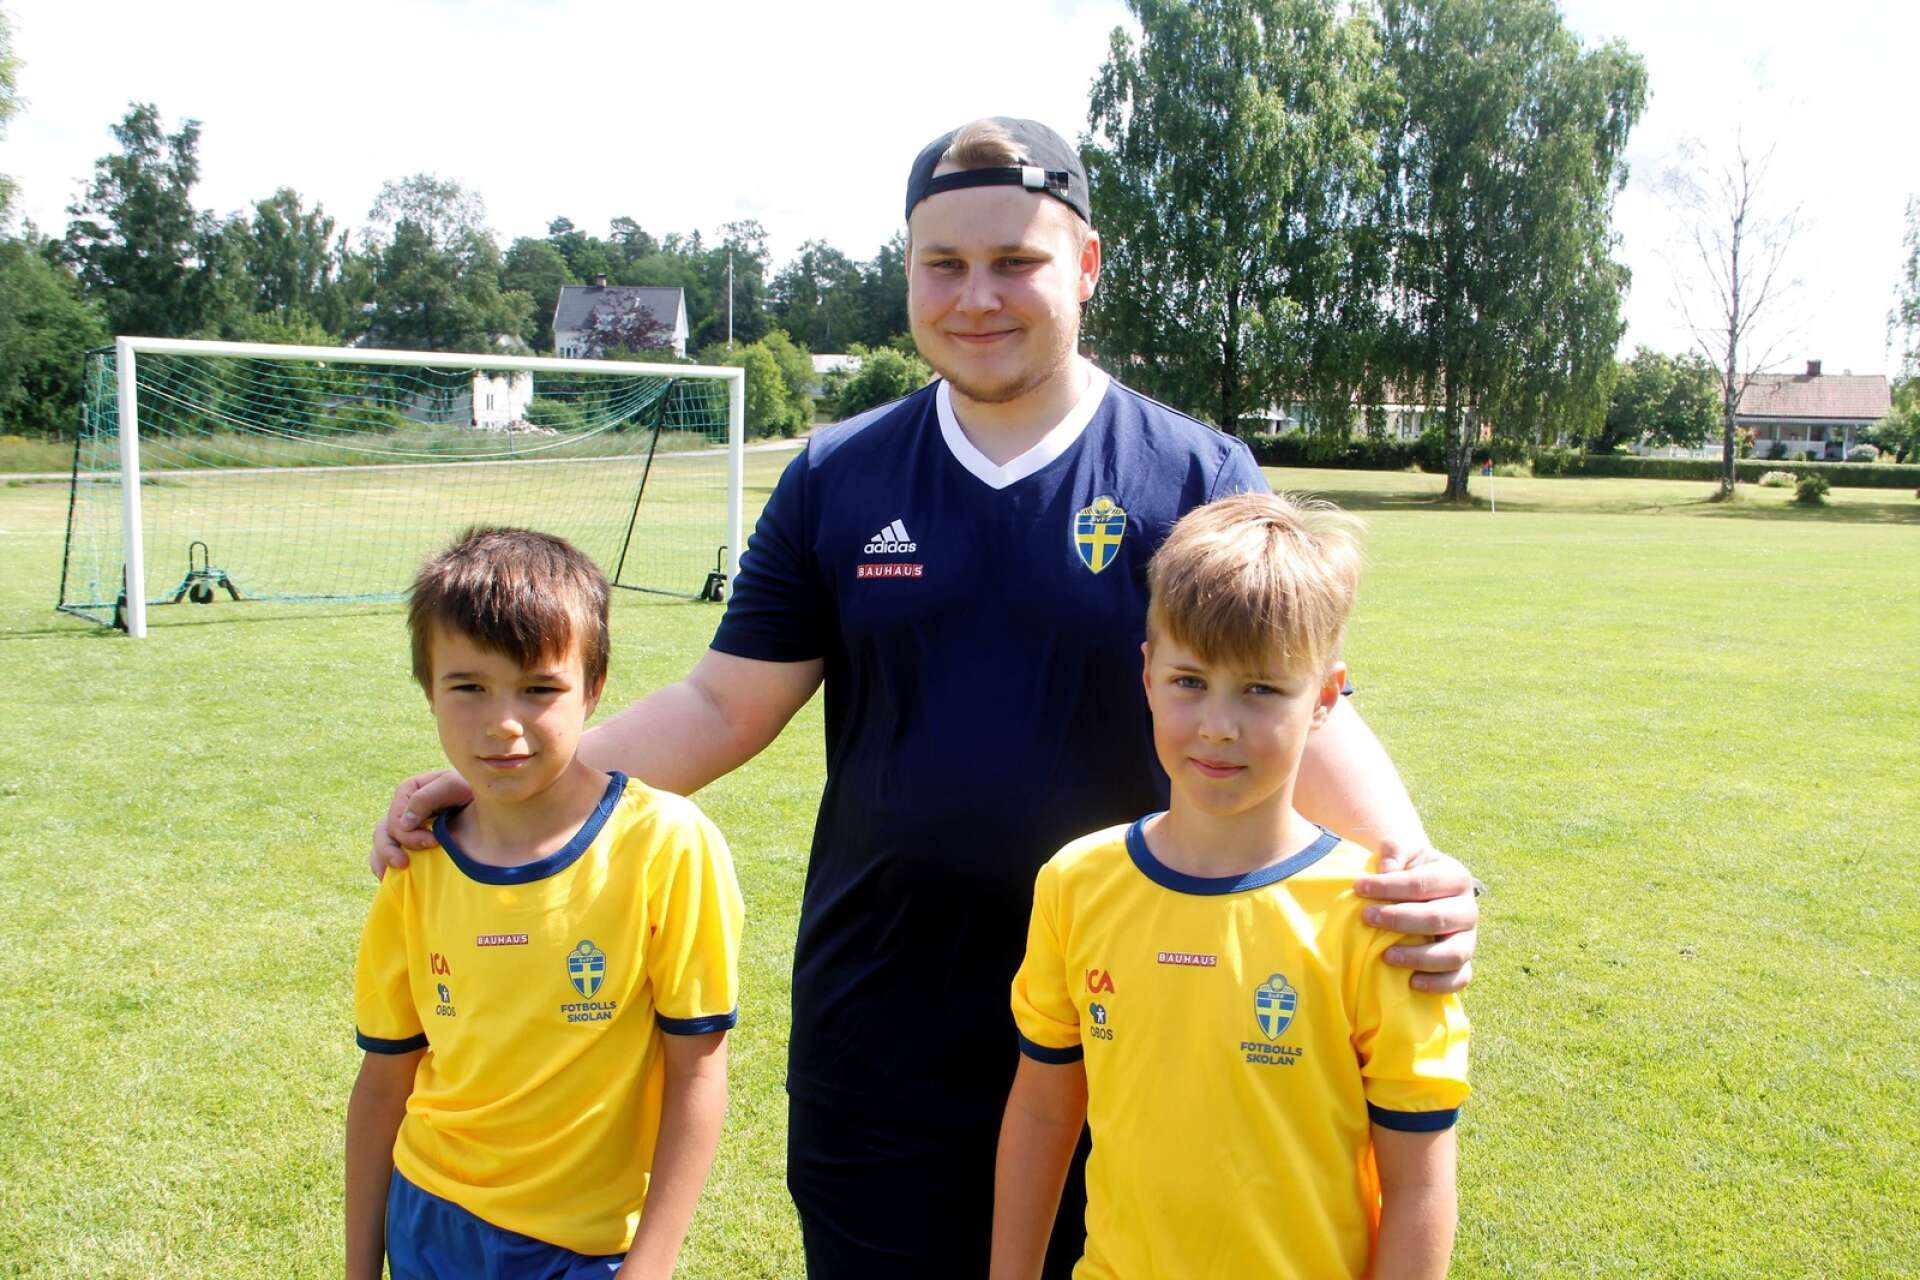 Ledaren Eddie Kry spelar fotboll i Tösse IF. Här poserar han tillsammans med Elias Karlsson och William Appelgren.